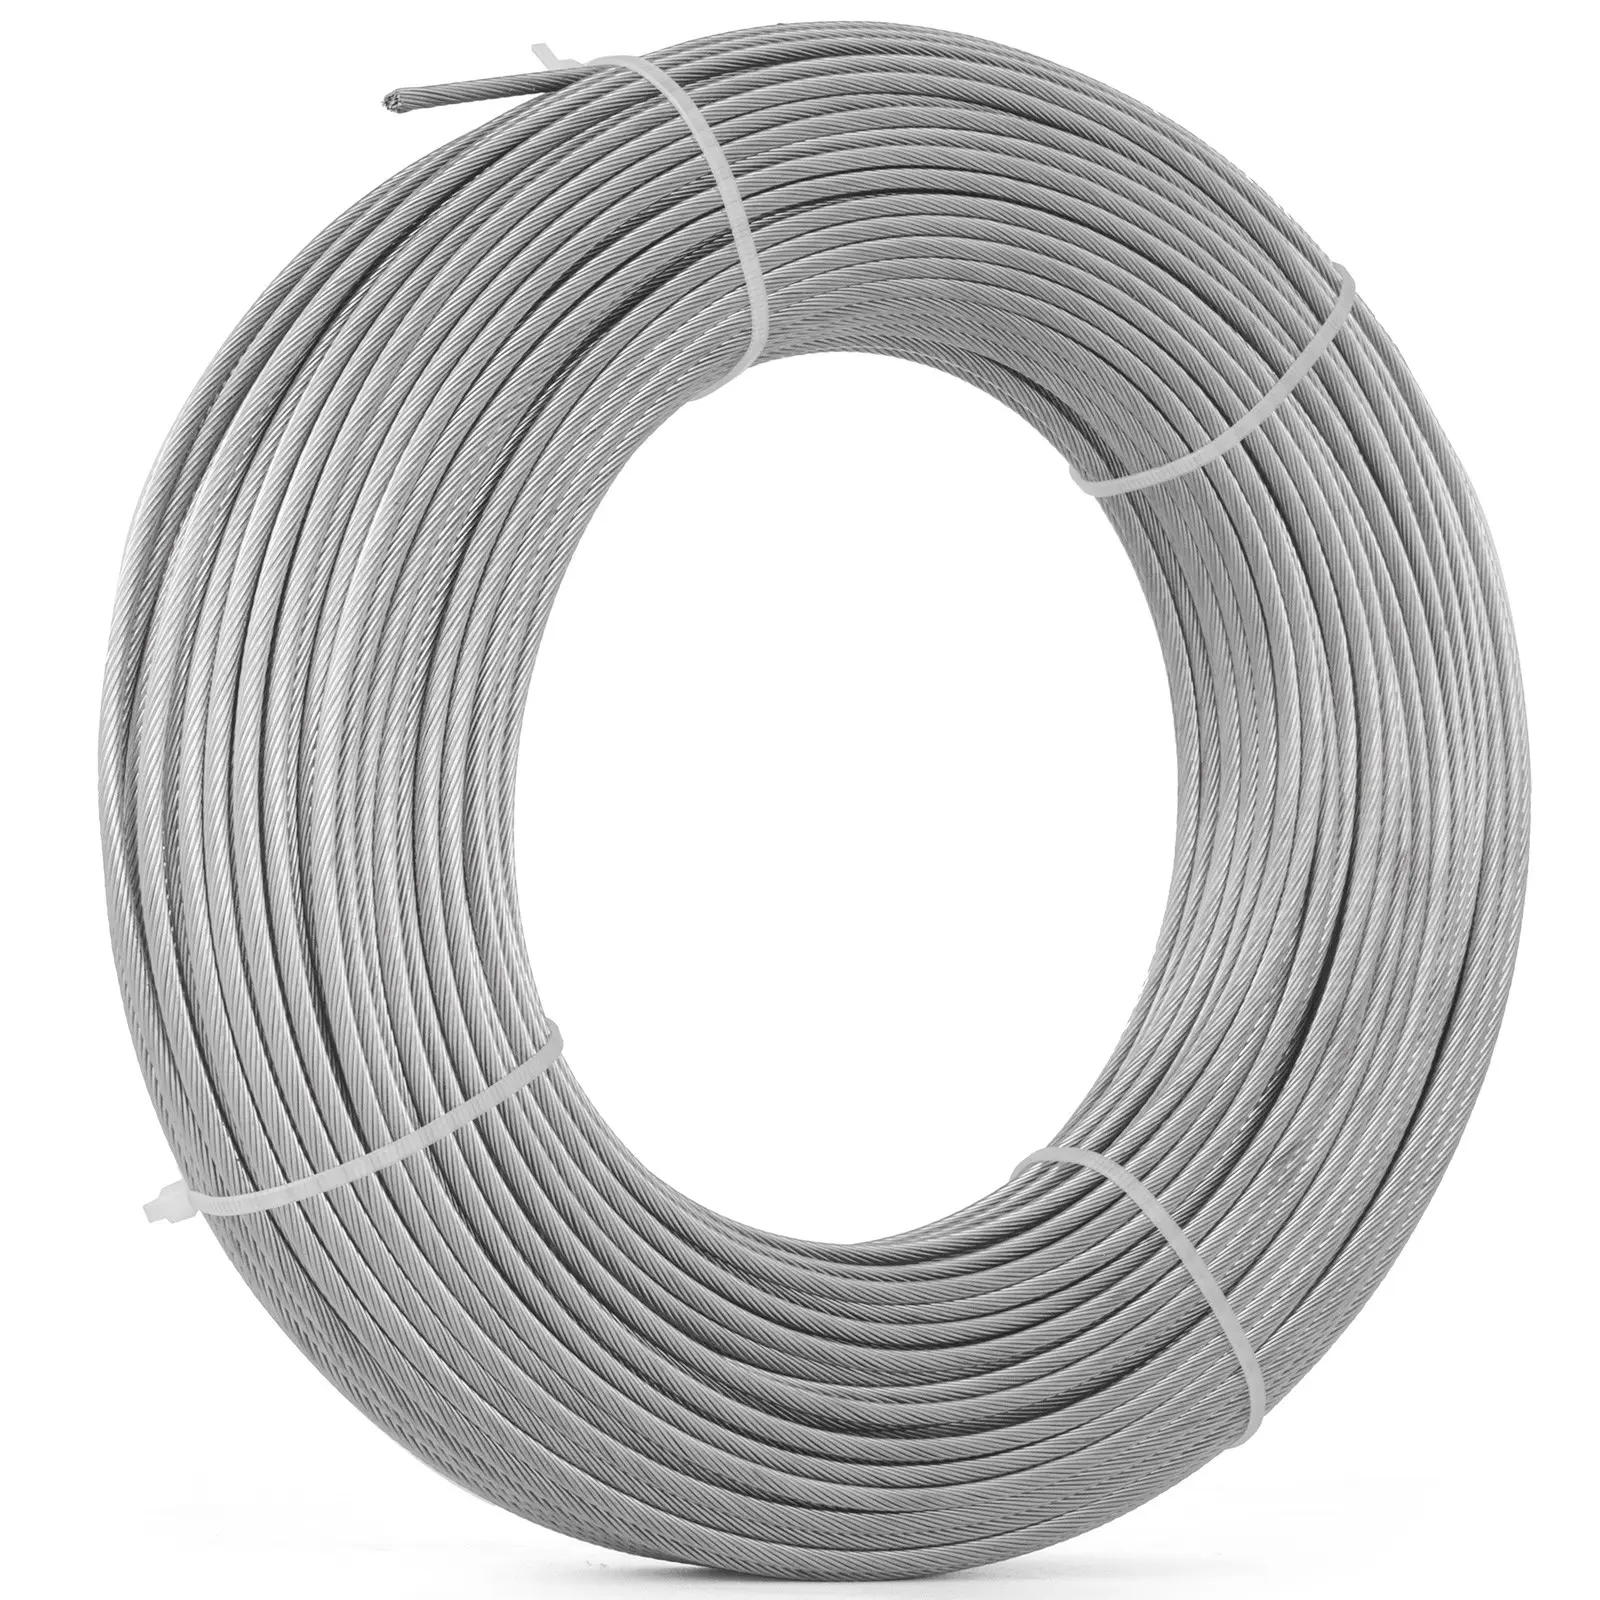 Kabel baja anti karat, tali kawat pagar kabel Stainless Steel 1/8 "3/16" 1x19 tipe 316 (1000 kaki)